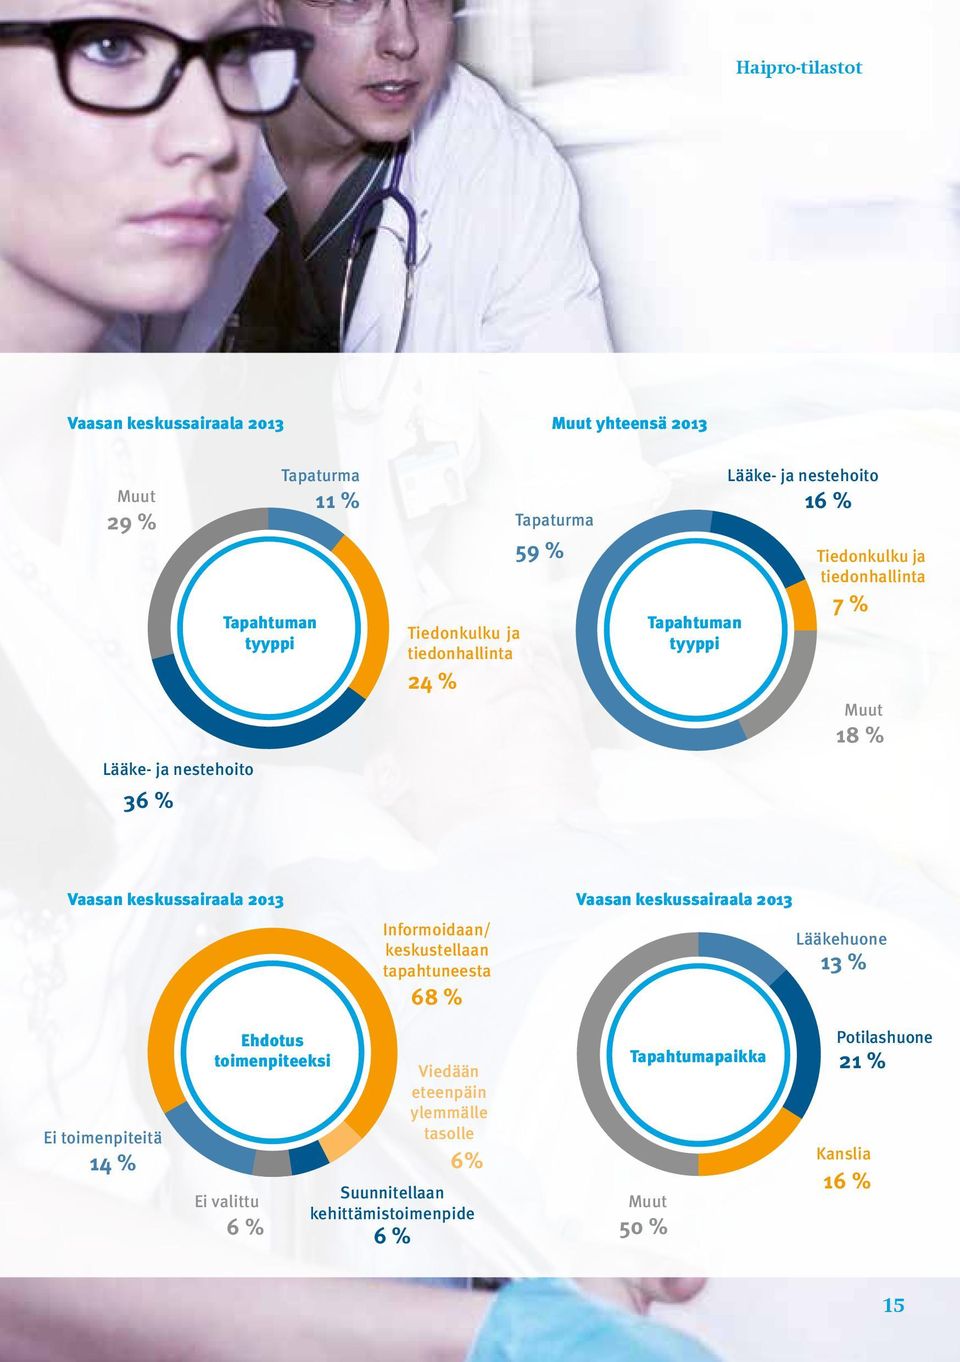 2013 Vaasan keskussairaala 2013 Informoidaan/ Lääkehuone keskustellaan tapahtuneesta 13 % 68 % Ei toimenpiteitä 14 % Ehdotus toimenpiteeksi Ei